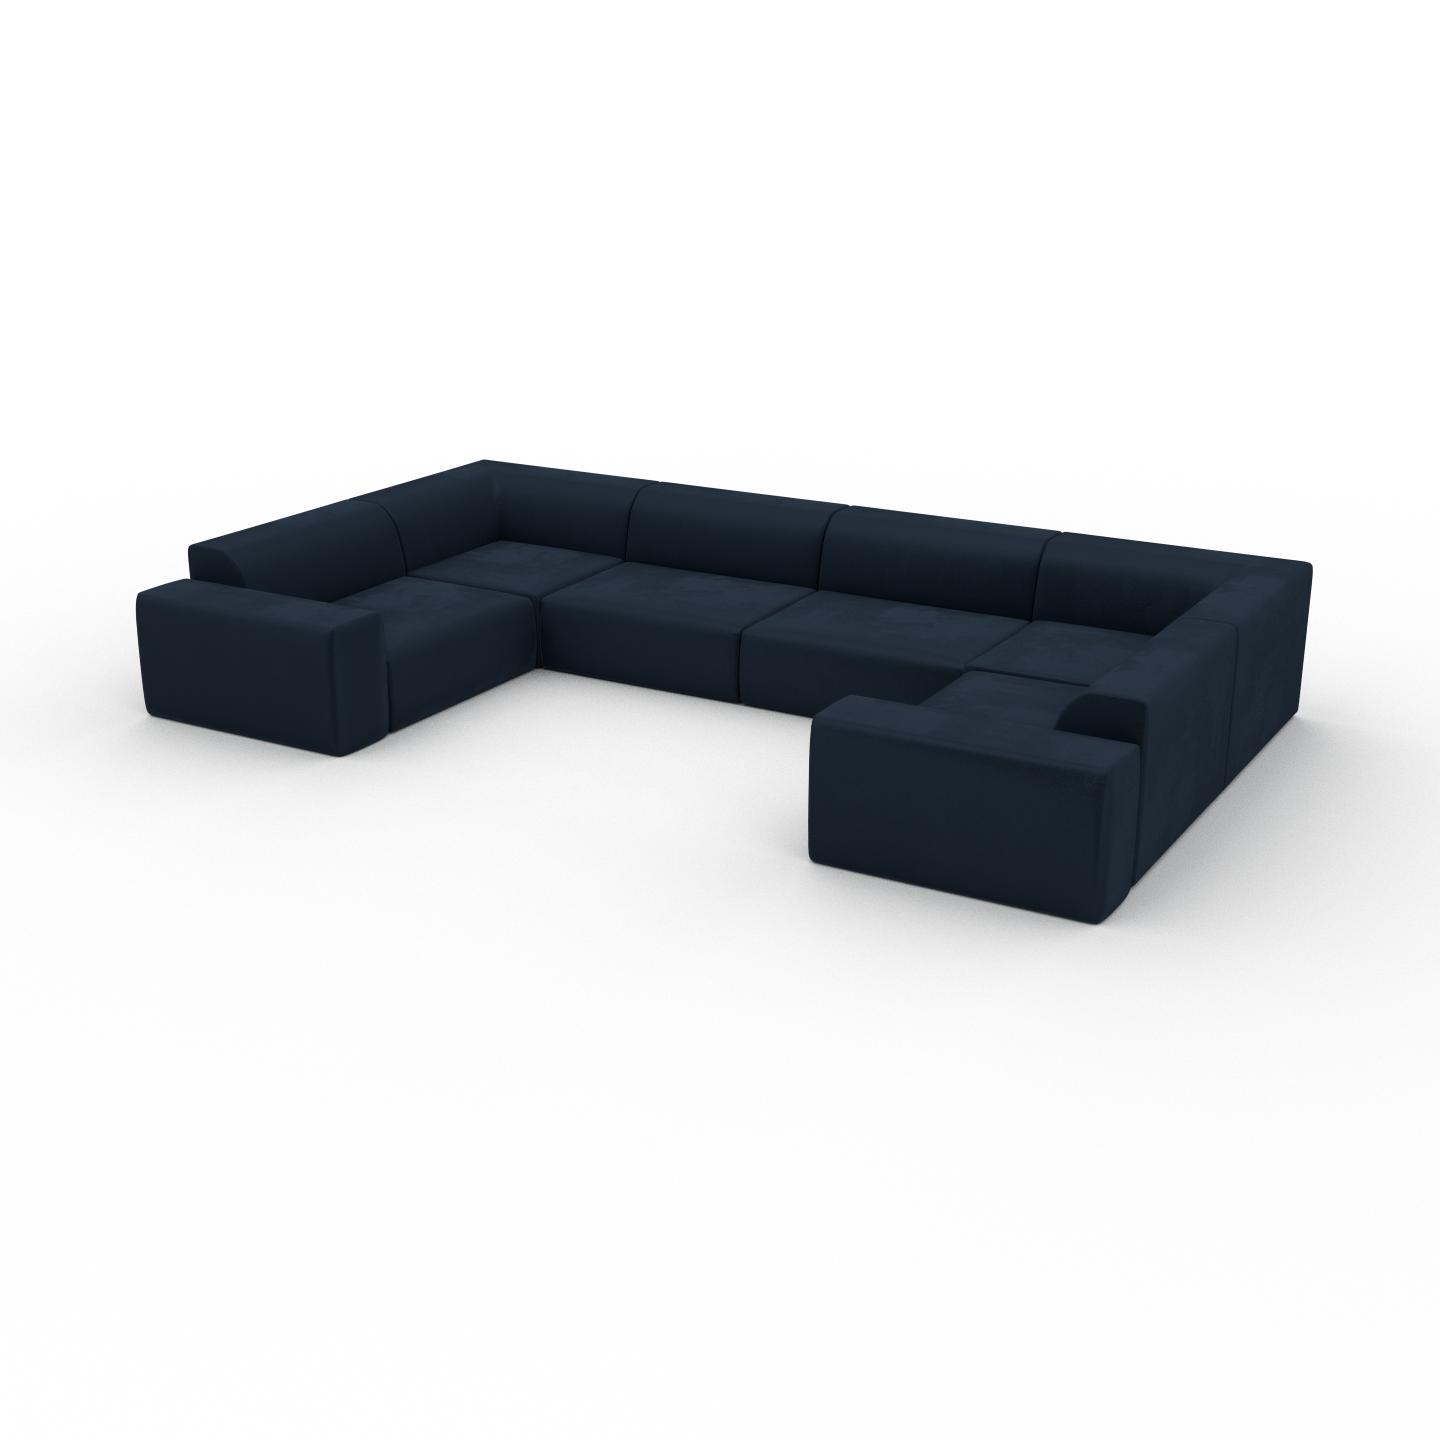 MYCS Sofa Samt Nachtblau - Moderne Designer-Couch: Hochwertige Qualität, einzigartiges Design - 412 x 72 x 239 cm, Komplett anpassbar